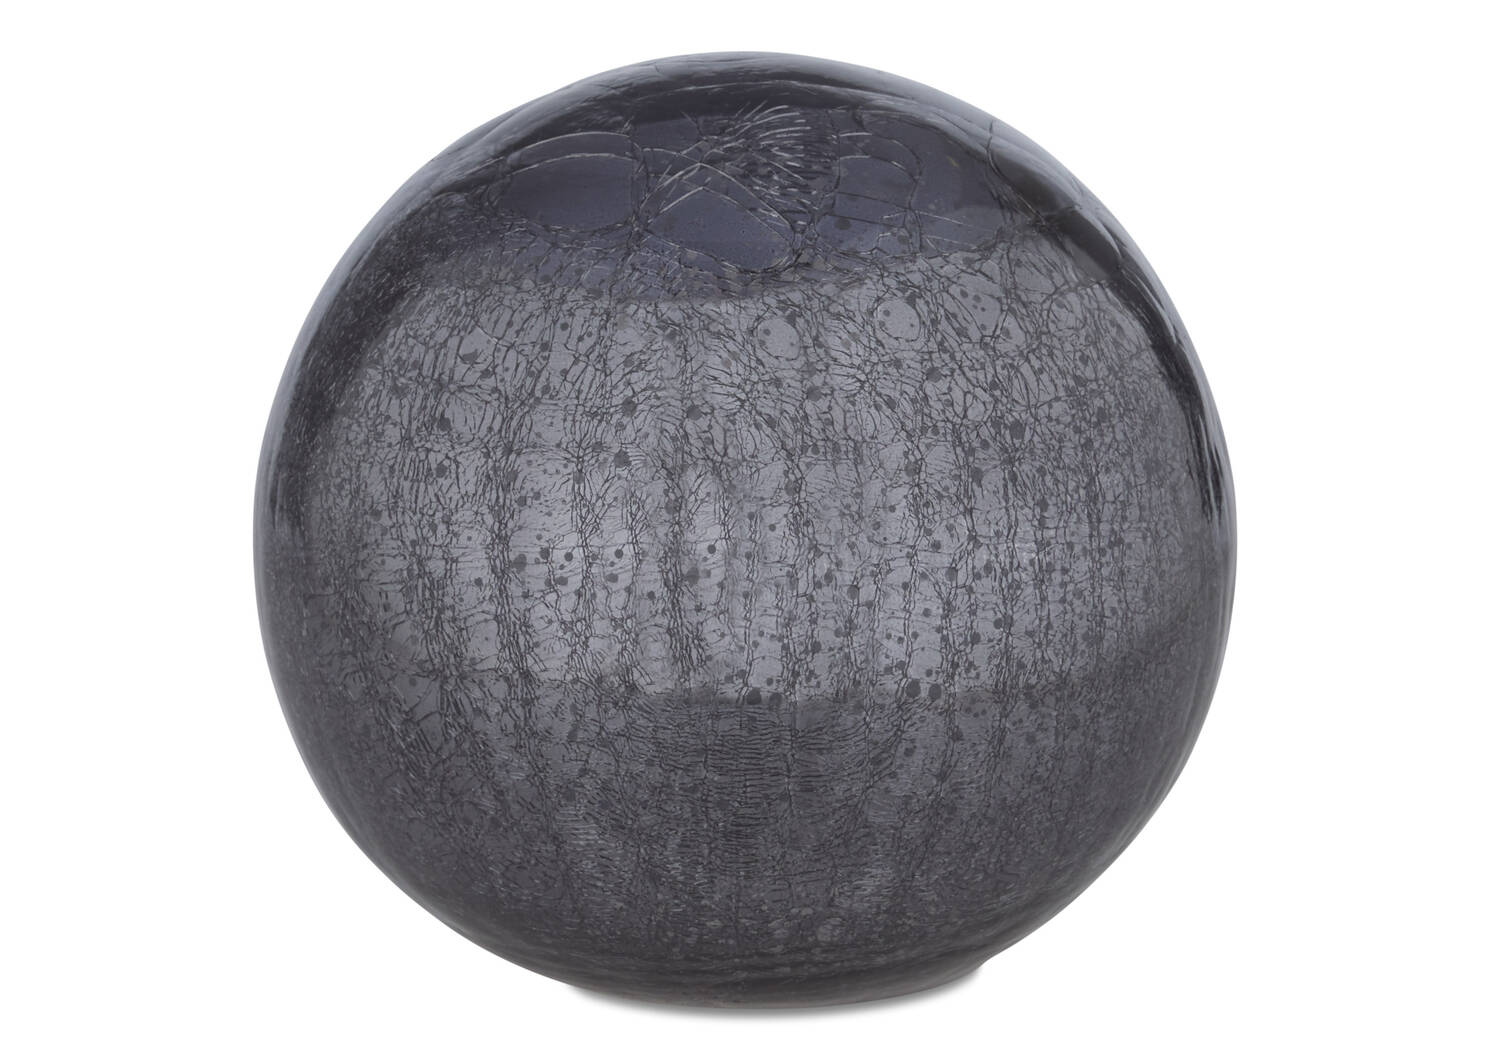 Donatella Decor Ball Large Charcoal